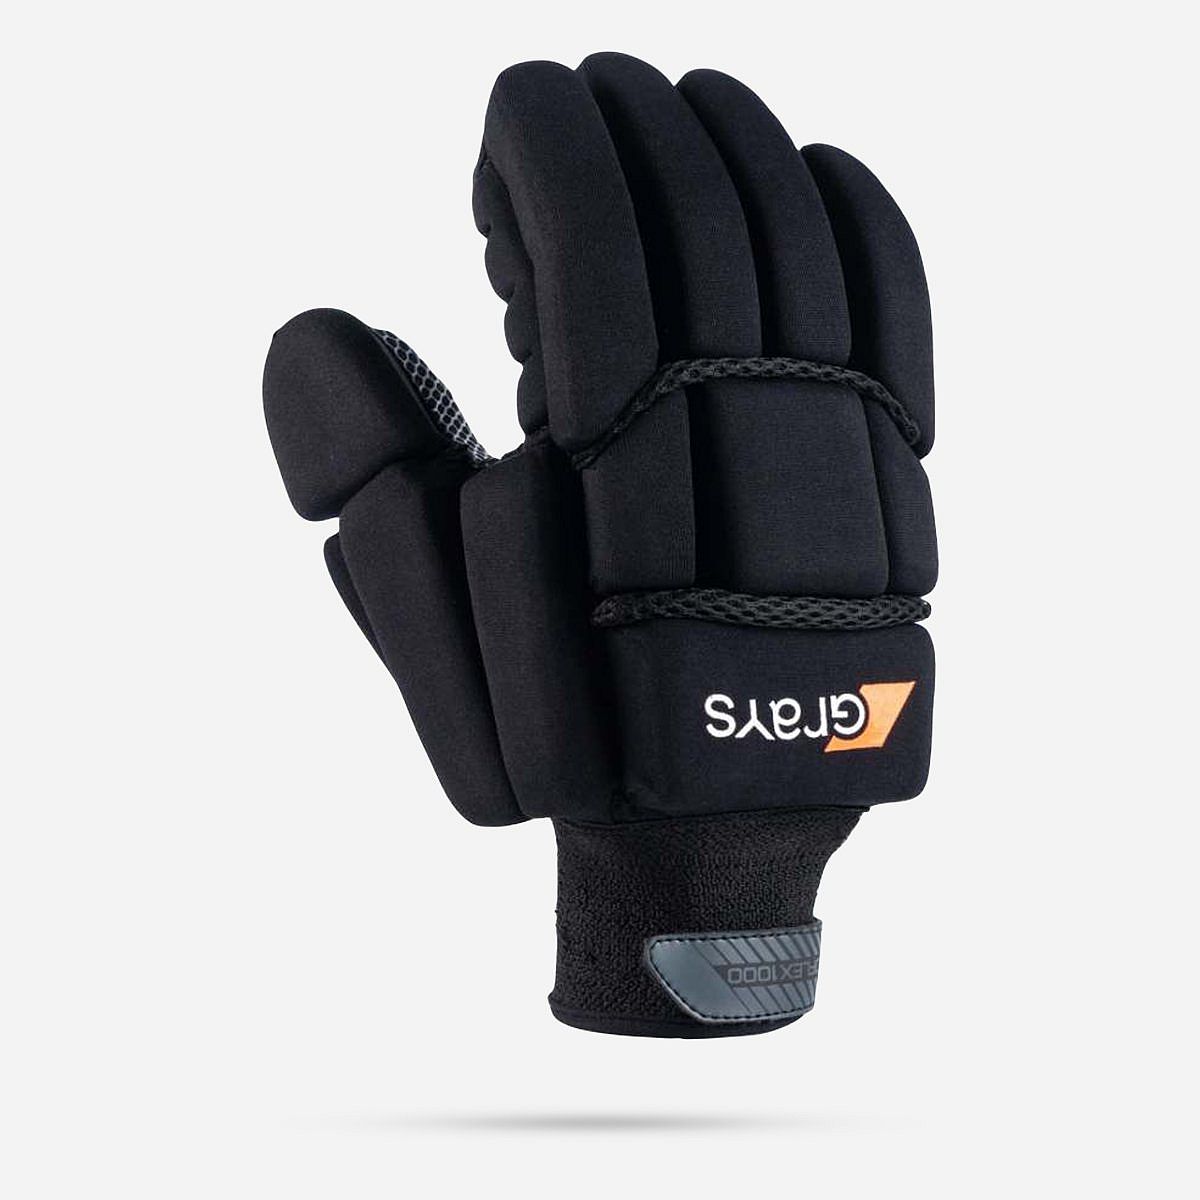 AN301025 Proflex 1000 Gloves